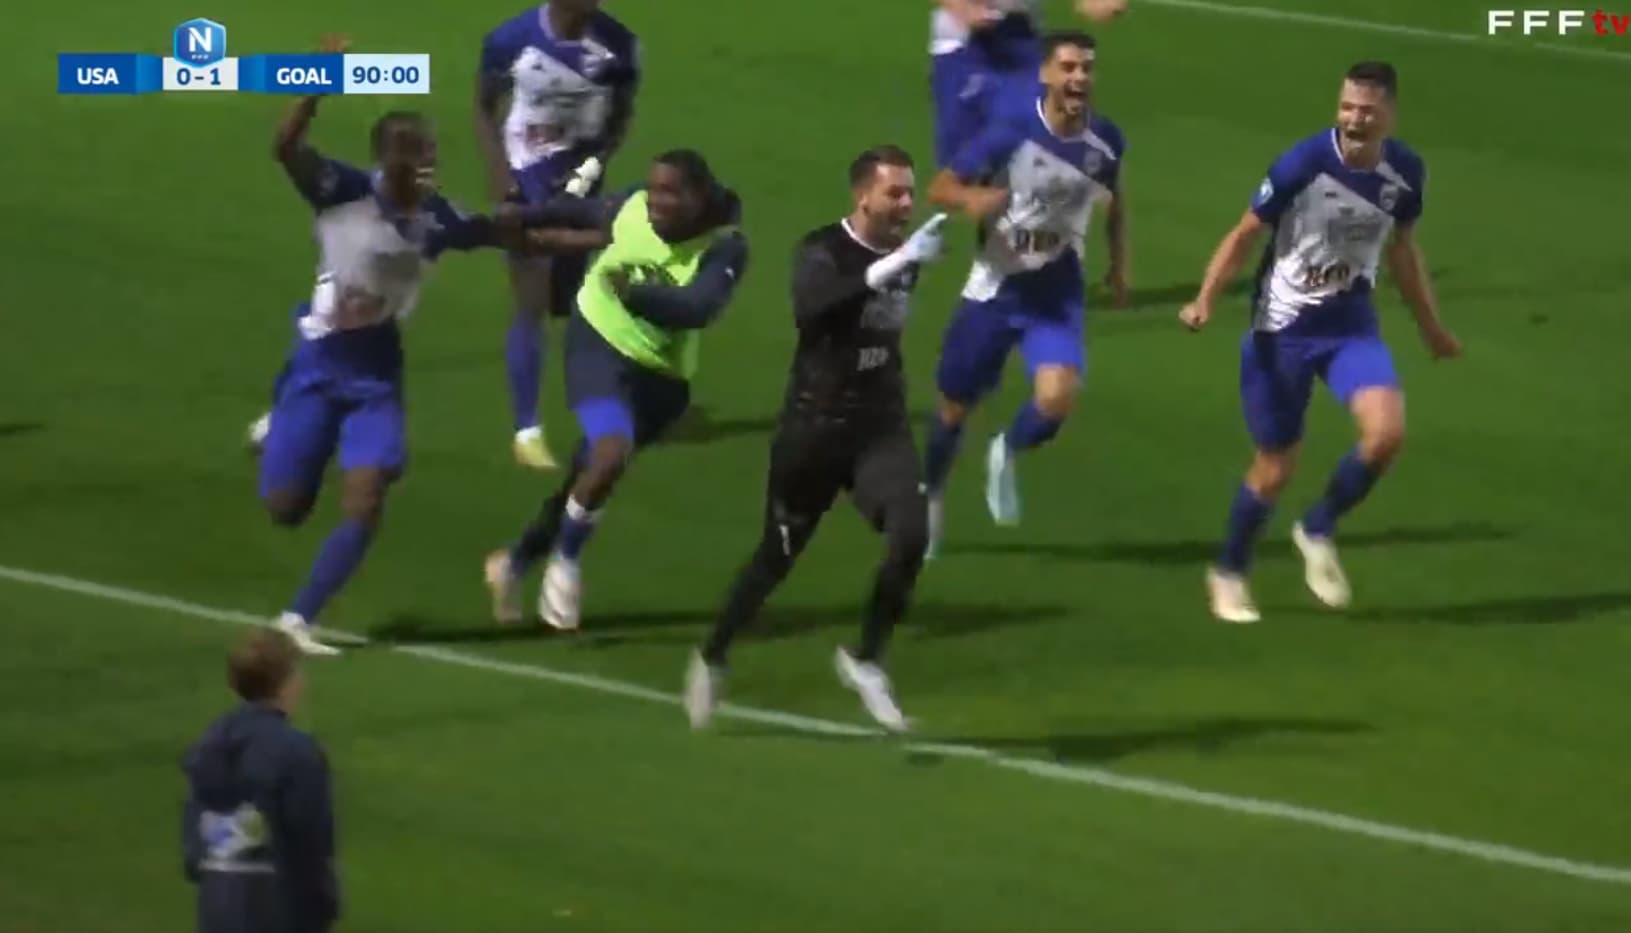 FOOTBALL  Le gardien de but sauve la vie d'un adversaire en plein match -  France Bleu